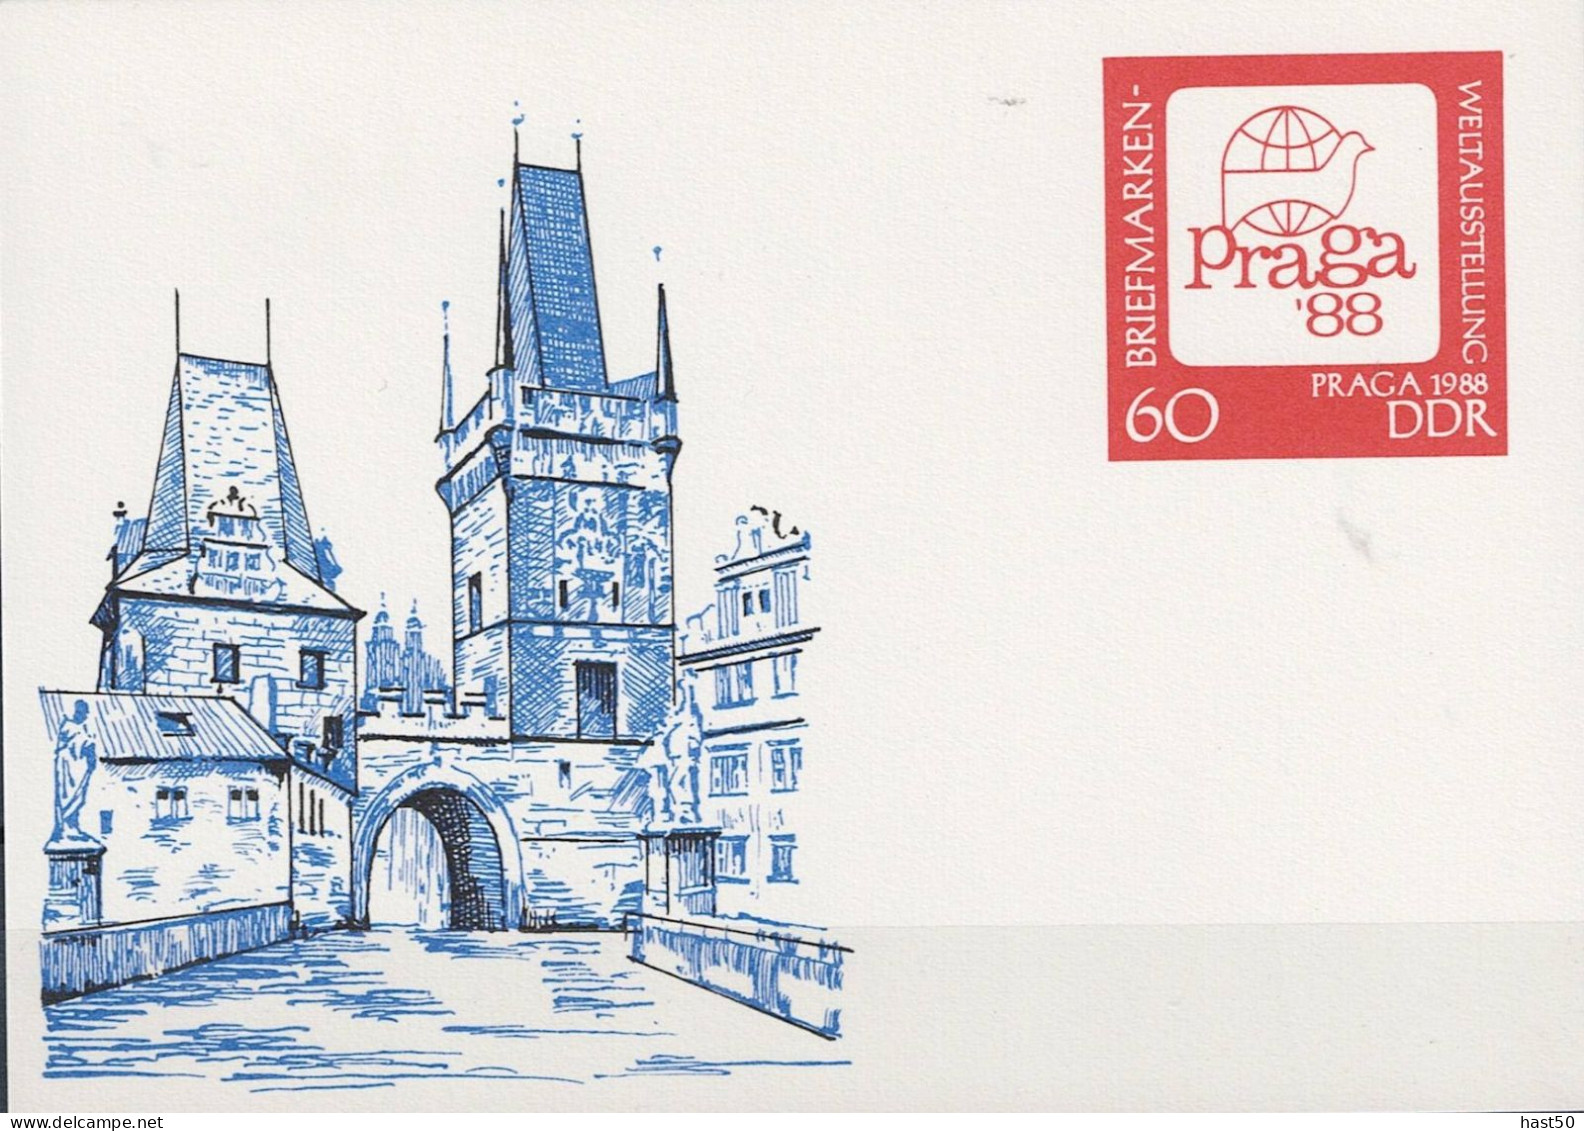 DDR GDR RDA - Sonderpostkarte PRAGA 1988 (MiNr: P 99) 1988 - Ungelaufen - Postkarten - Ungebraucht